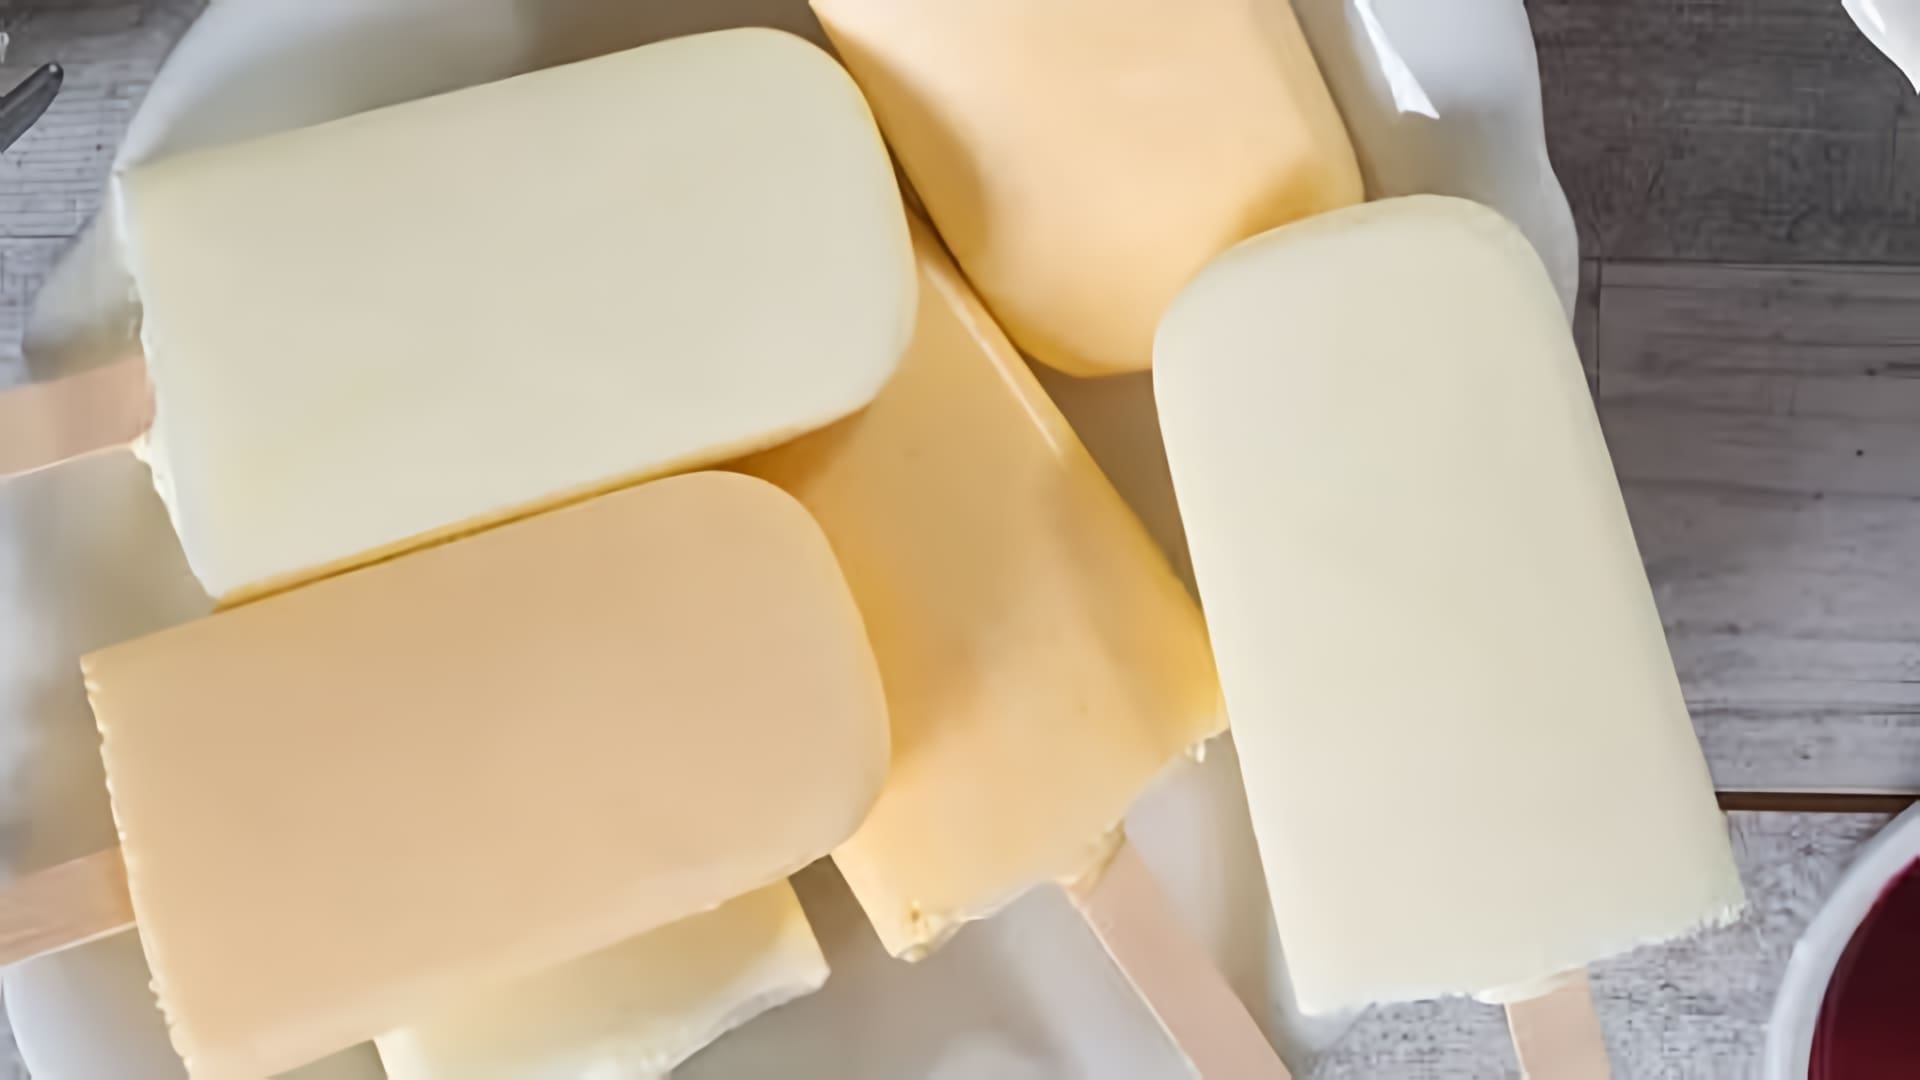 В этом видео-ролике рассказывается о том, как приготовить вкусное мороженое дома без использования яиц и сливок